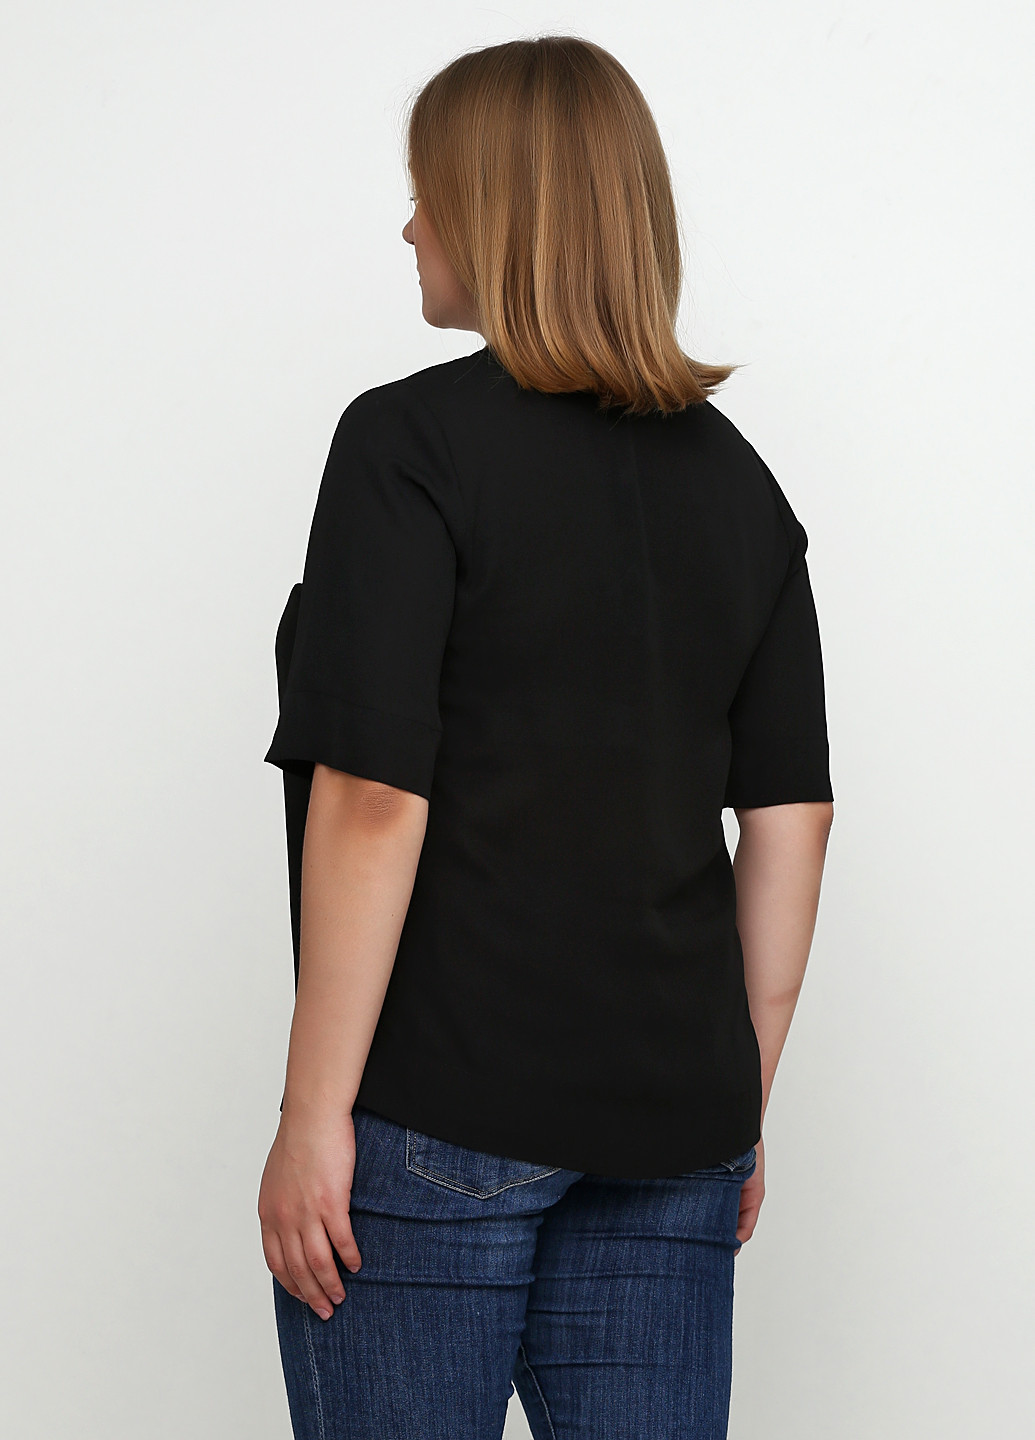 Чёрная блуза LabelBe